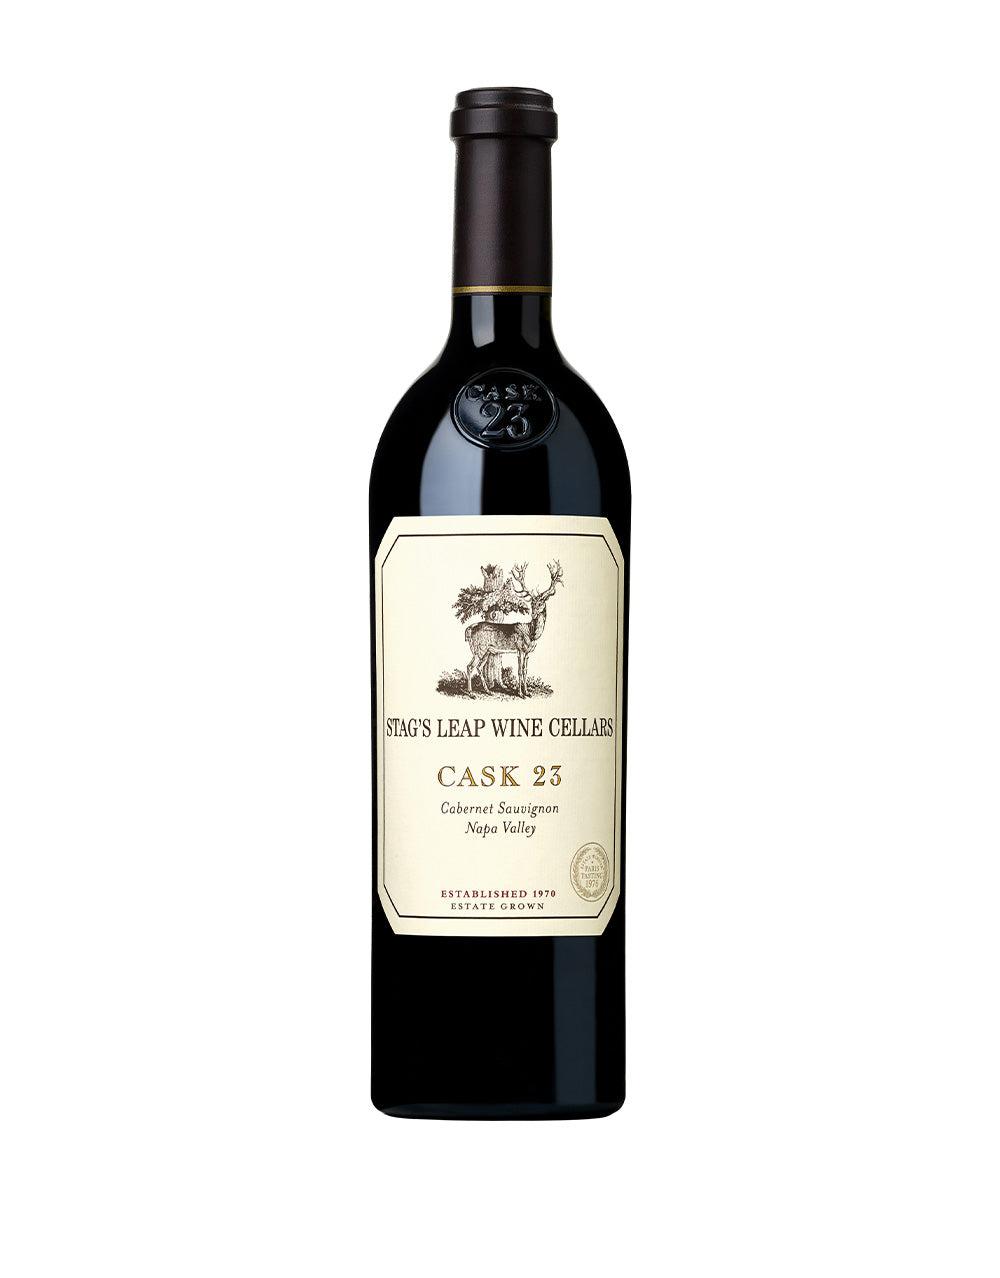 Stag's Leap Wine Cellars "Cask 23" Cabernet Sauvignon